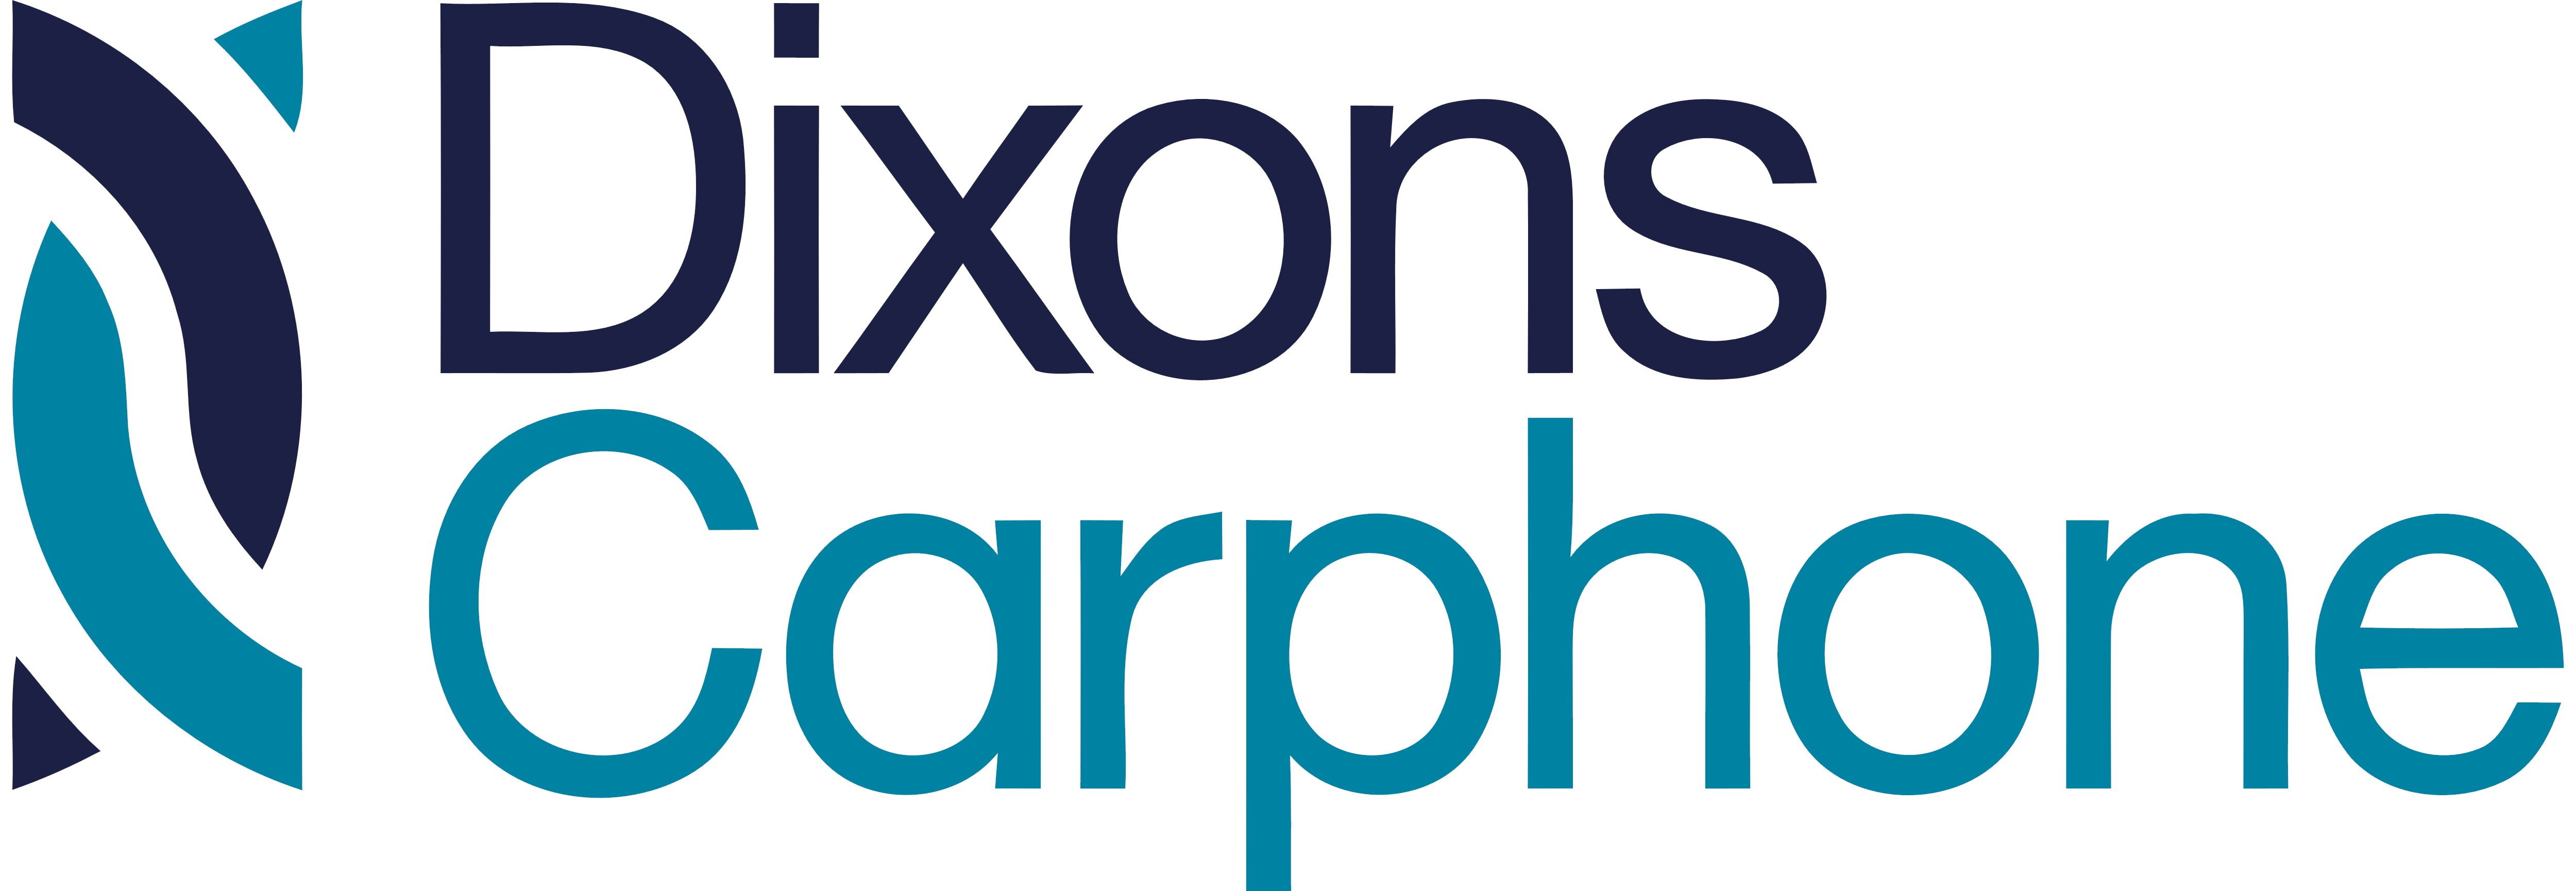 Dixons Carphone Logo Wallpaper